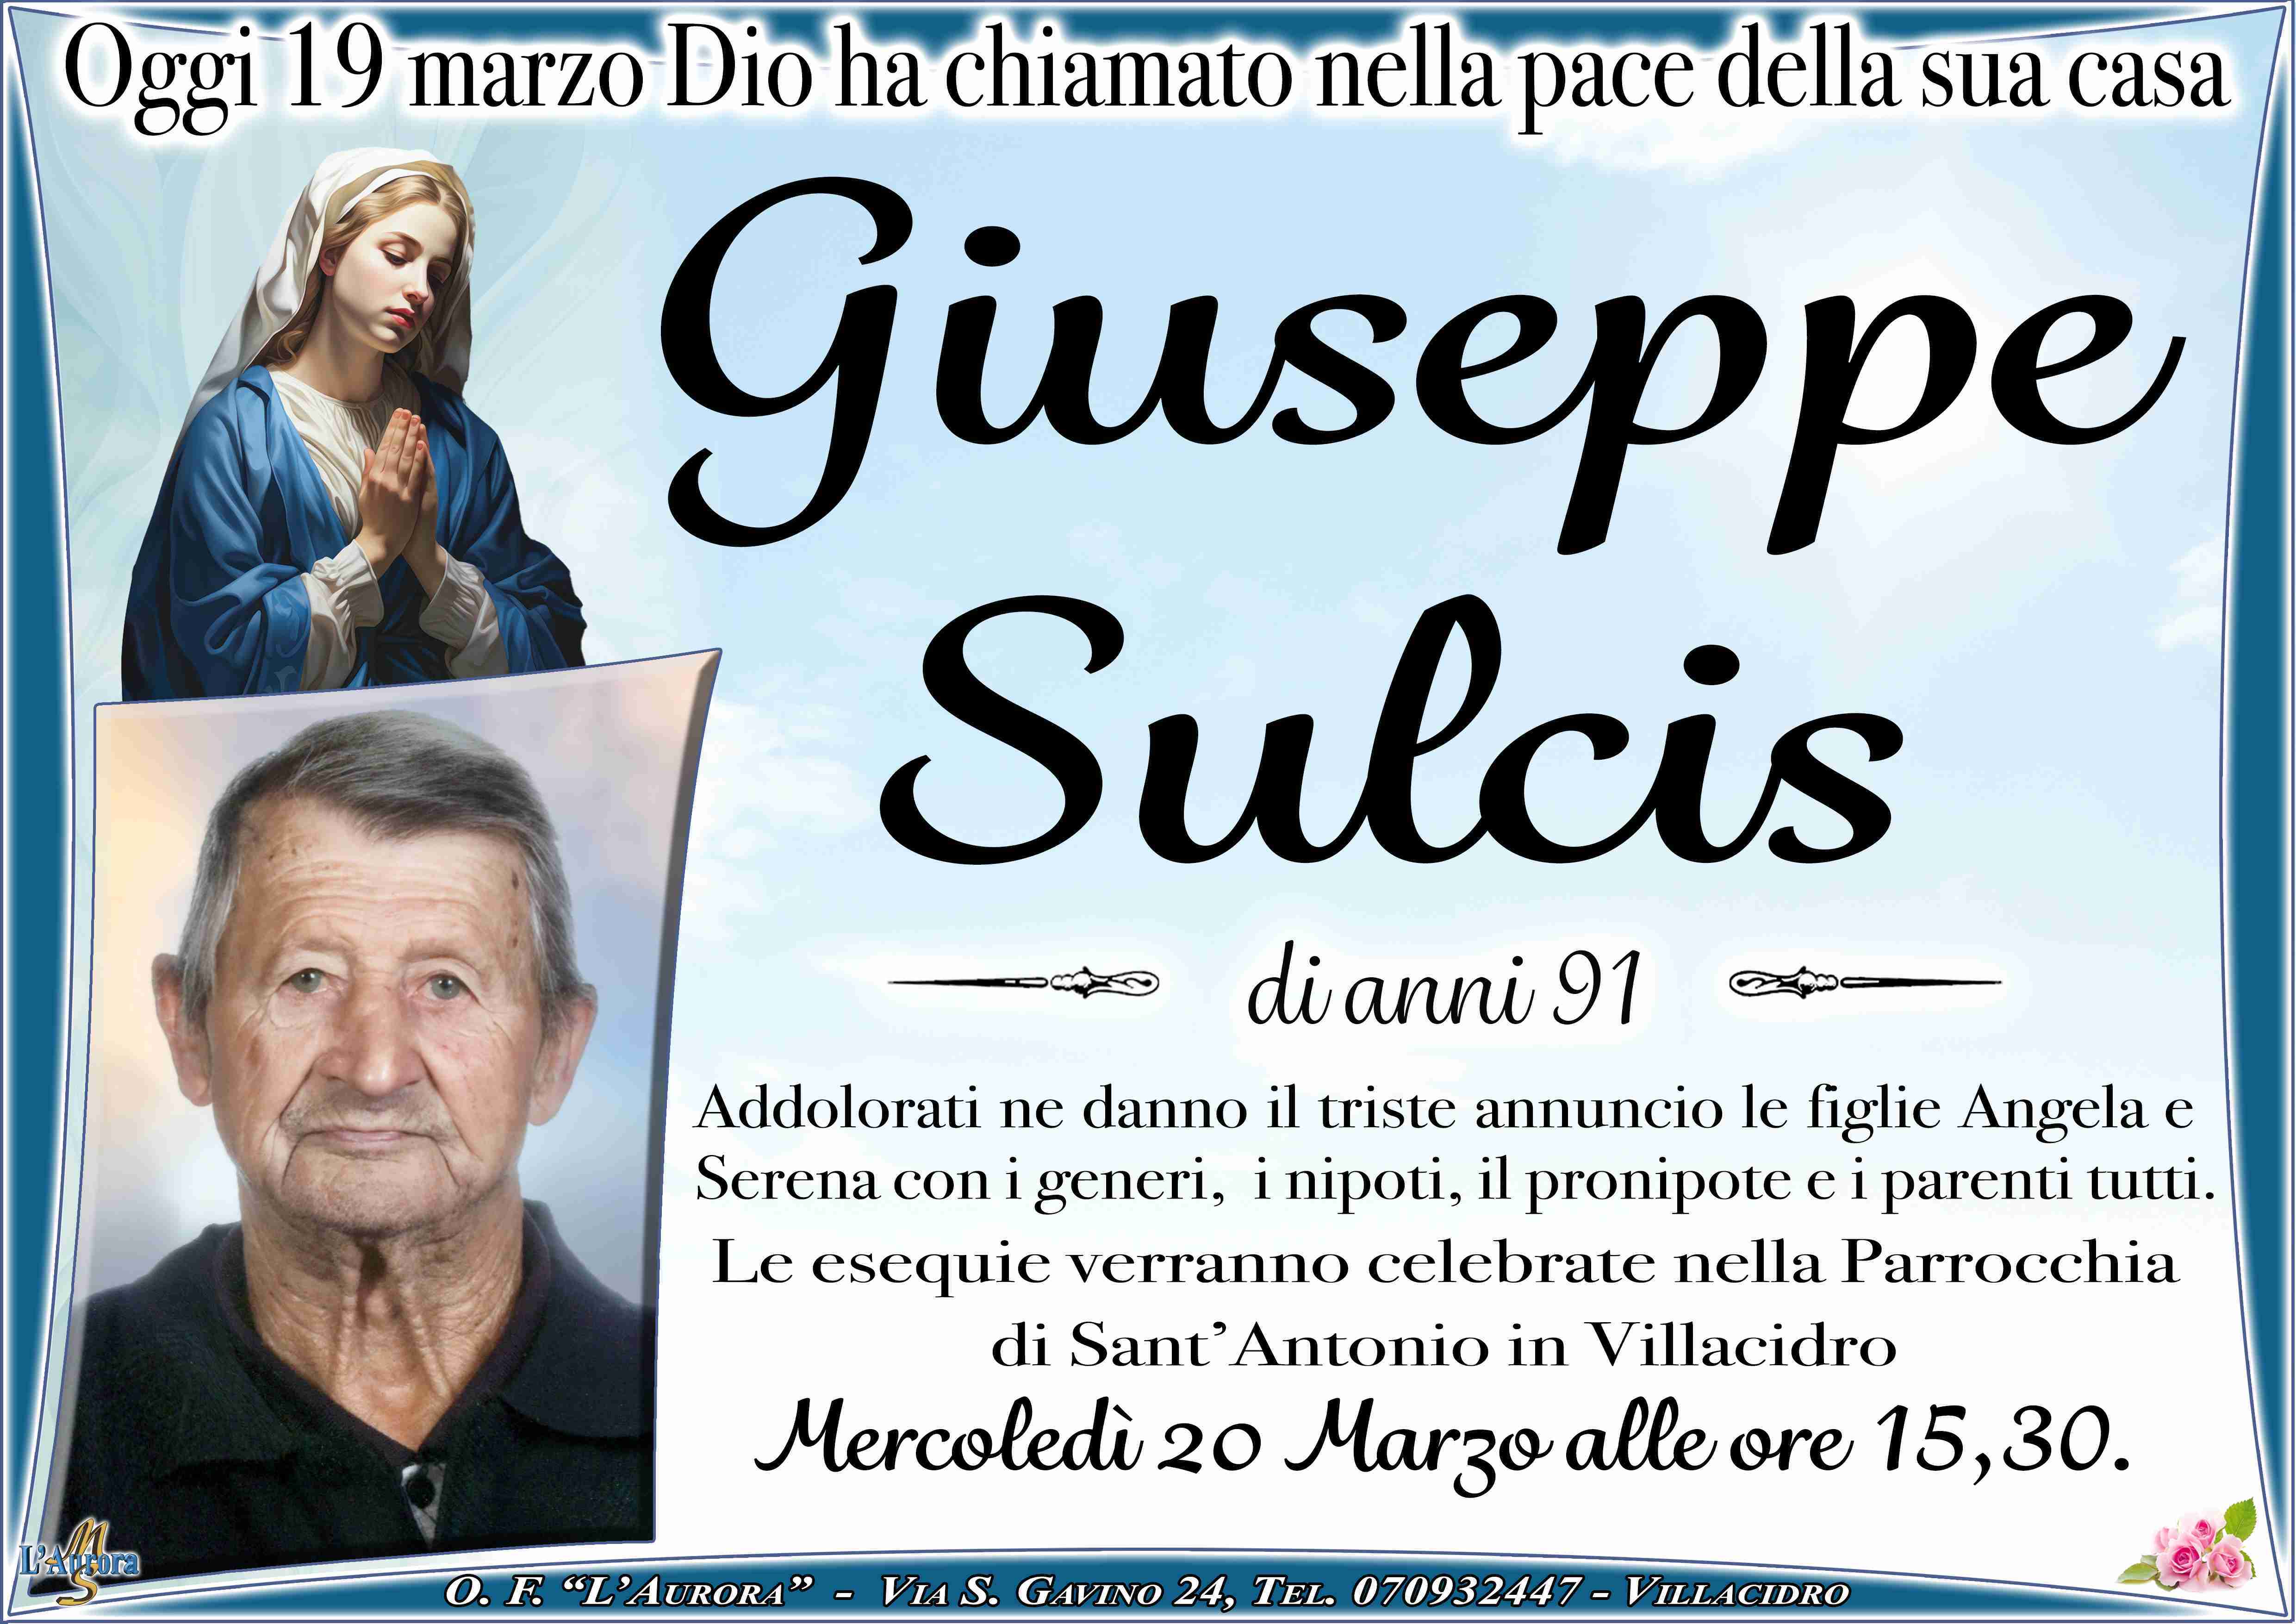 Giuseppe Sulcis